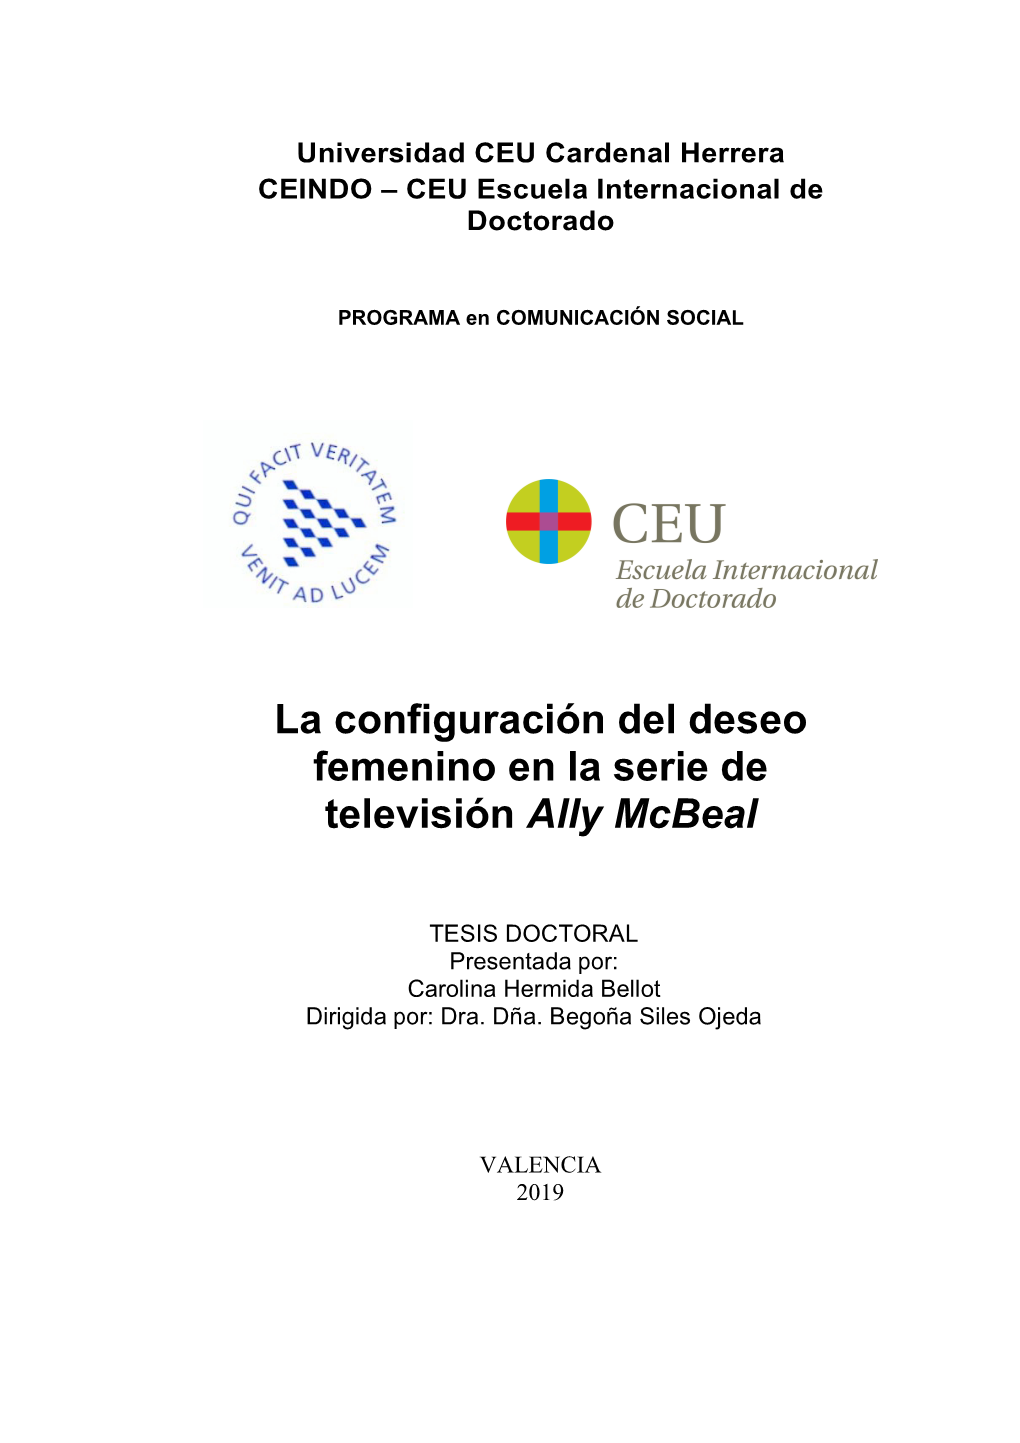 La Configuración Del Deseo Femenino En La Serie De Televisión "Ally Mcbeal"